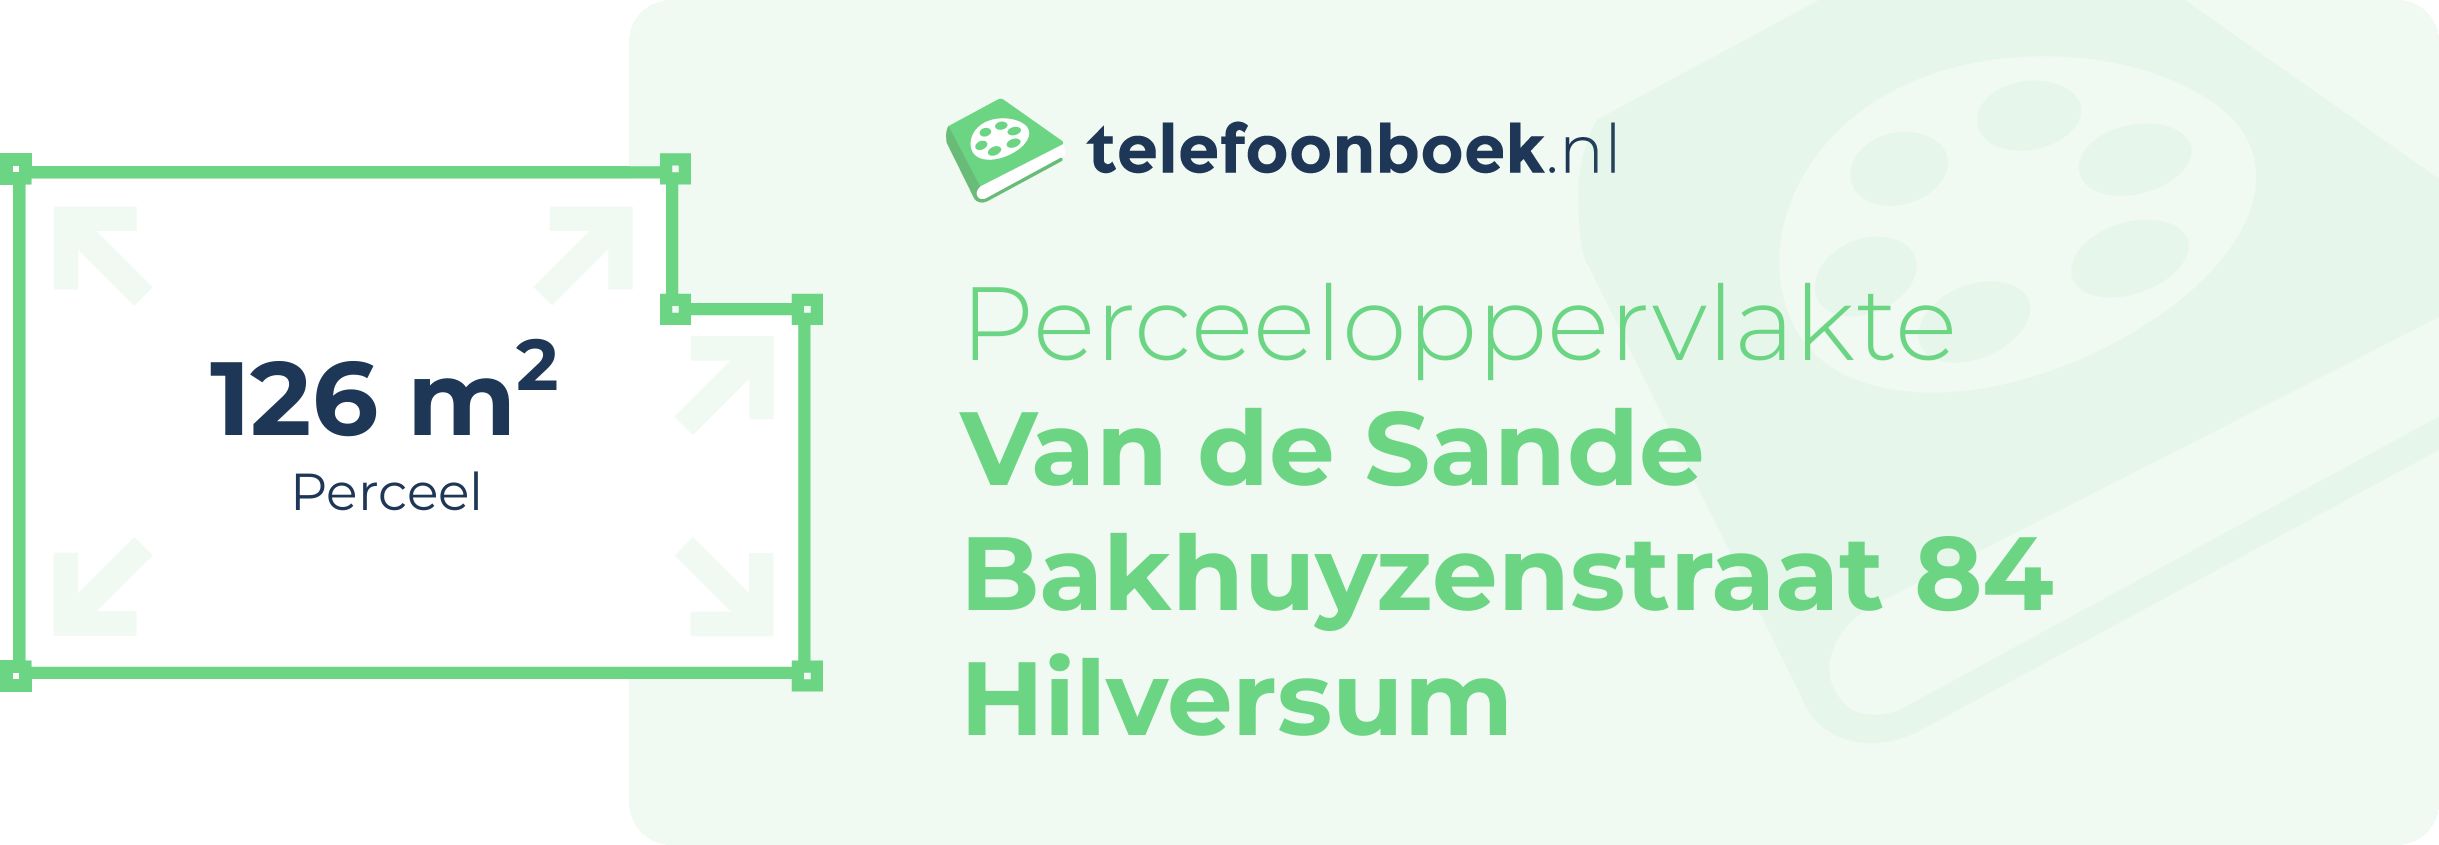 Perceeloppervlakte Van De Sande Bakhuyzenstraat 84 Hilversum